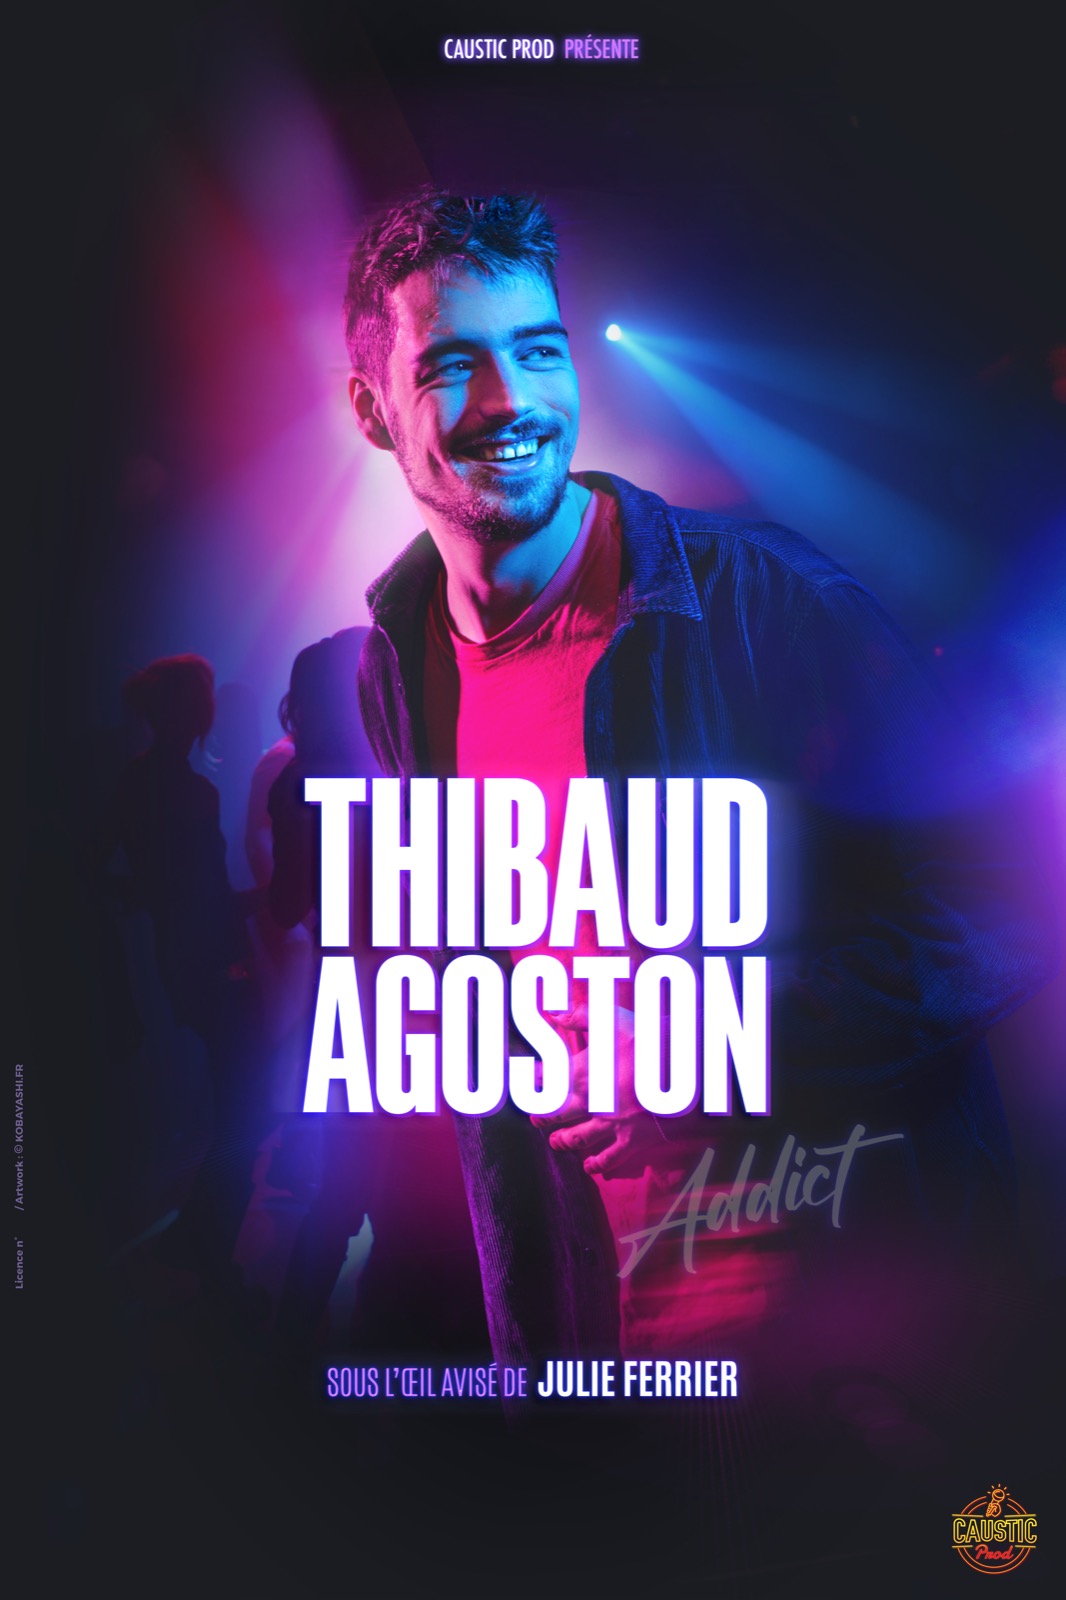 Thibaud Agoston - Addict